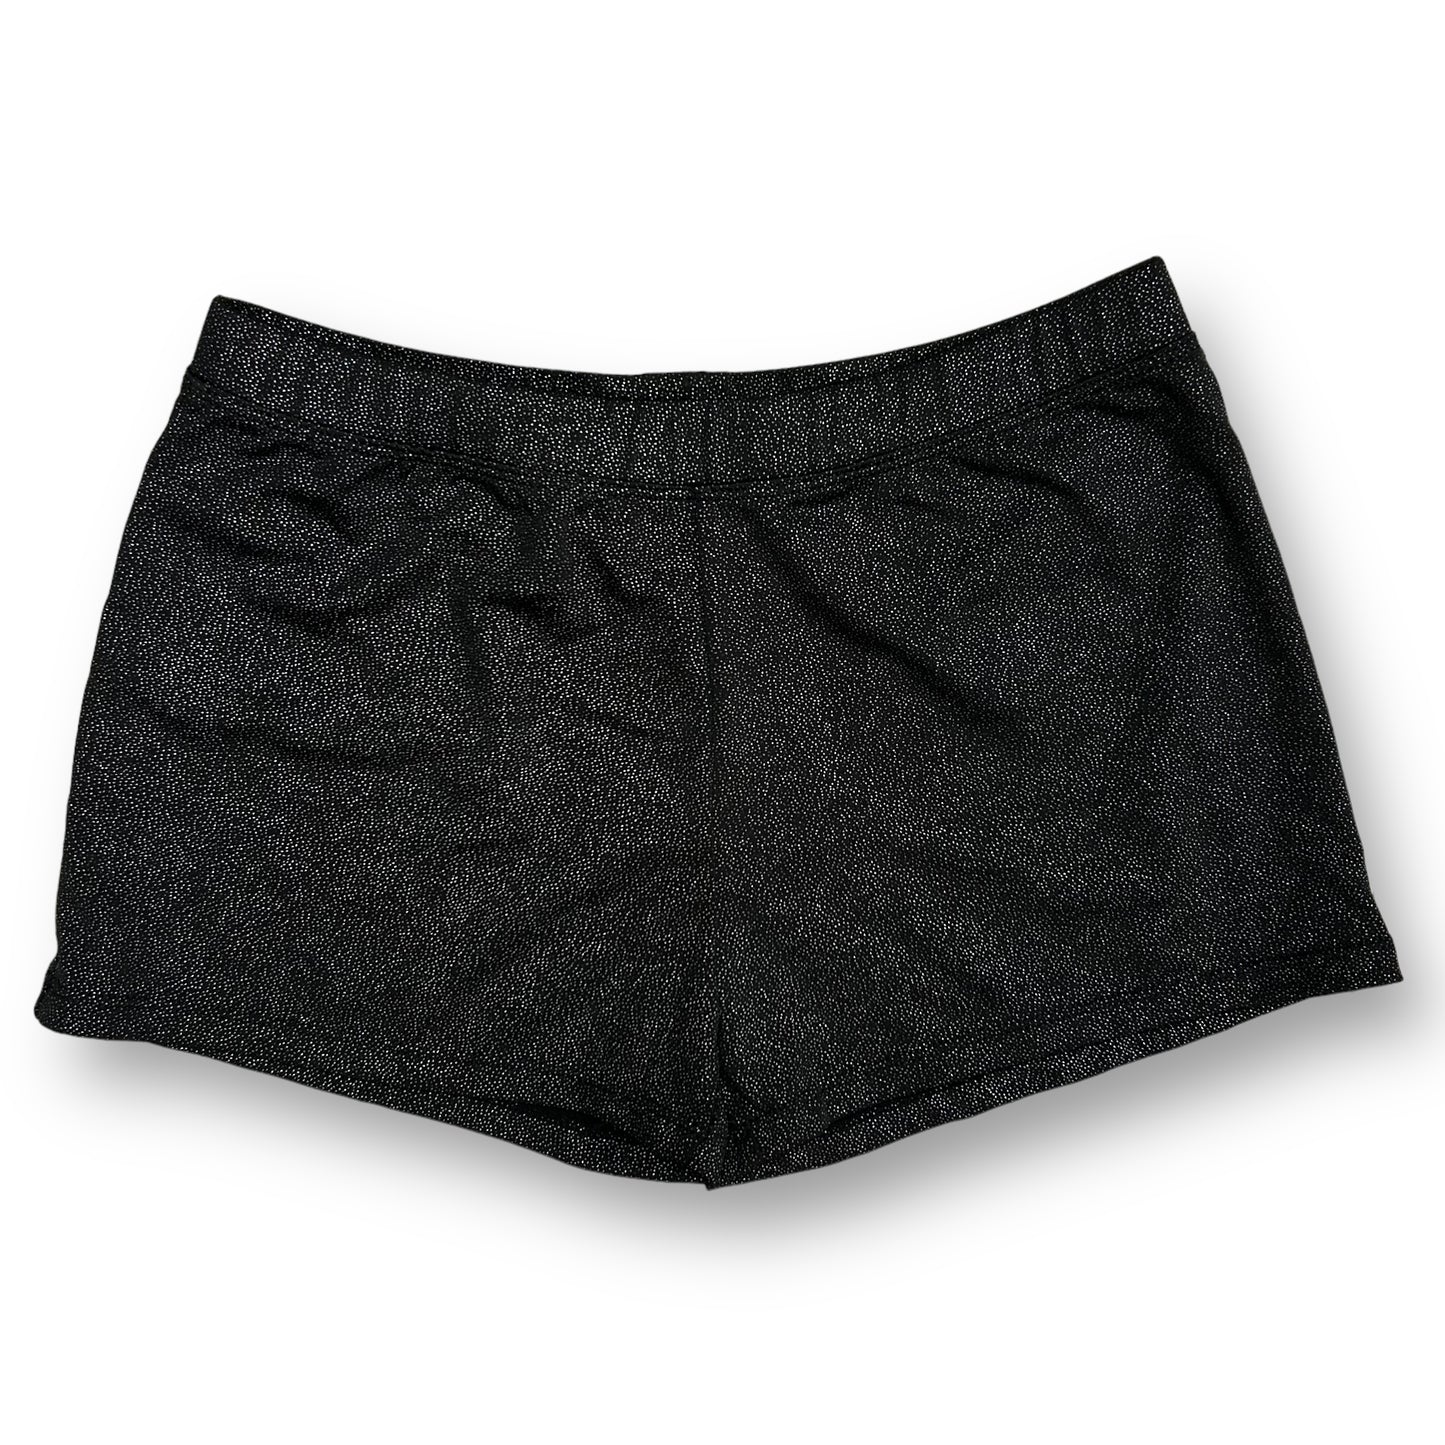 Girls Dancina Size 10 Black Shimmer Fitted Dance Shorts